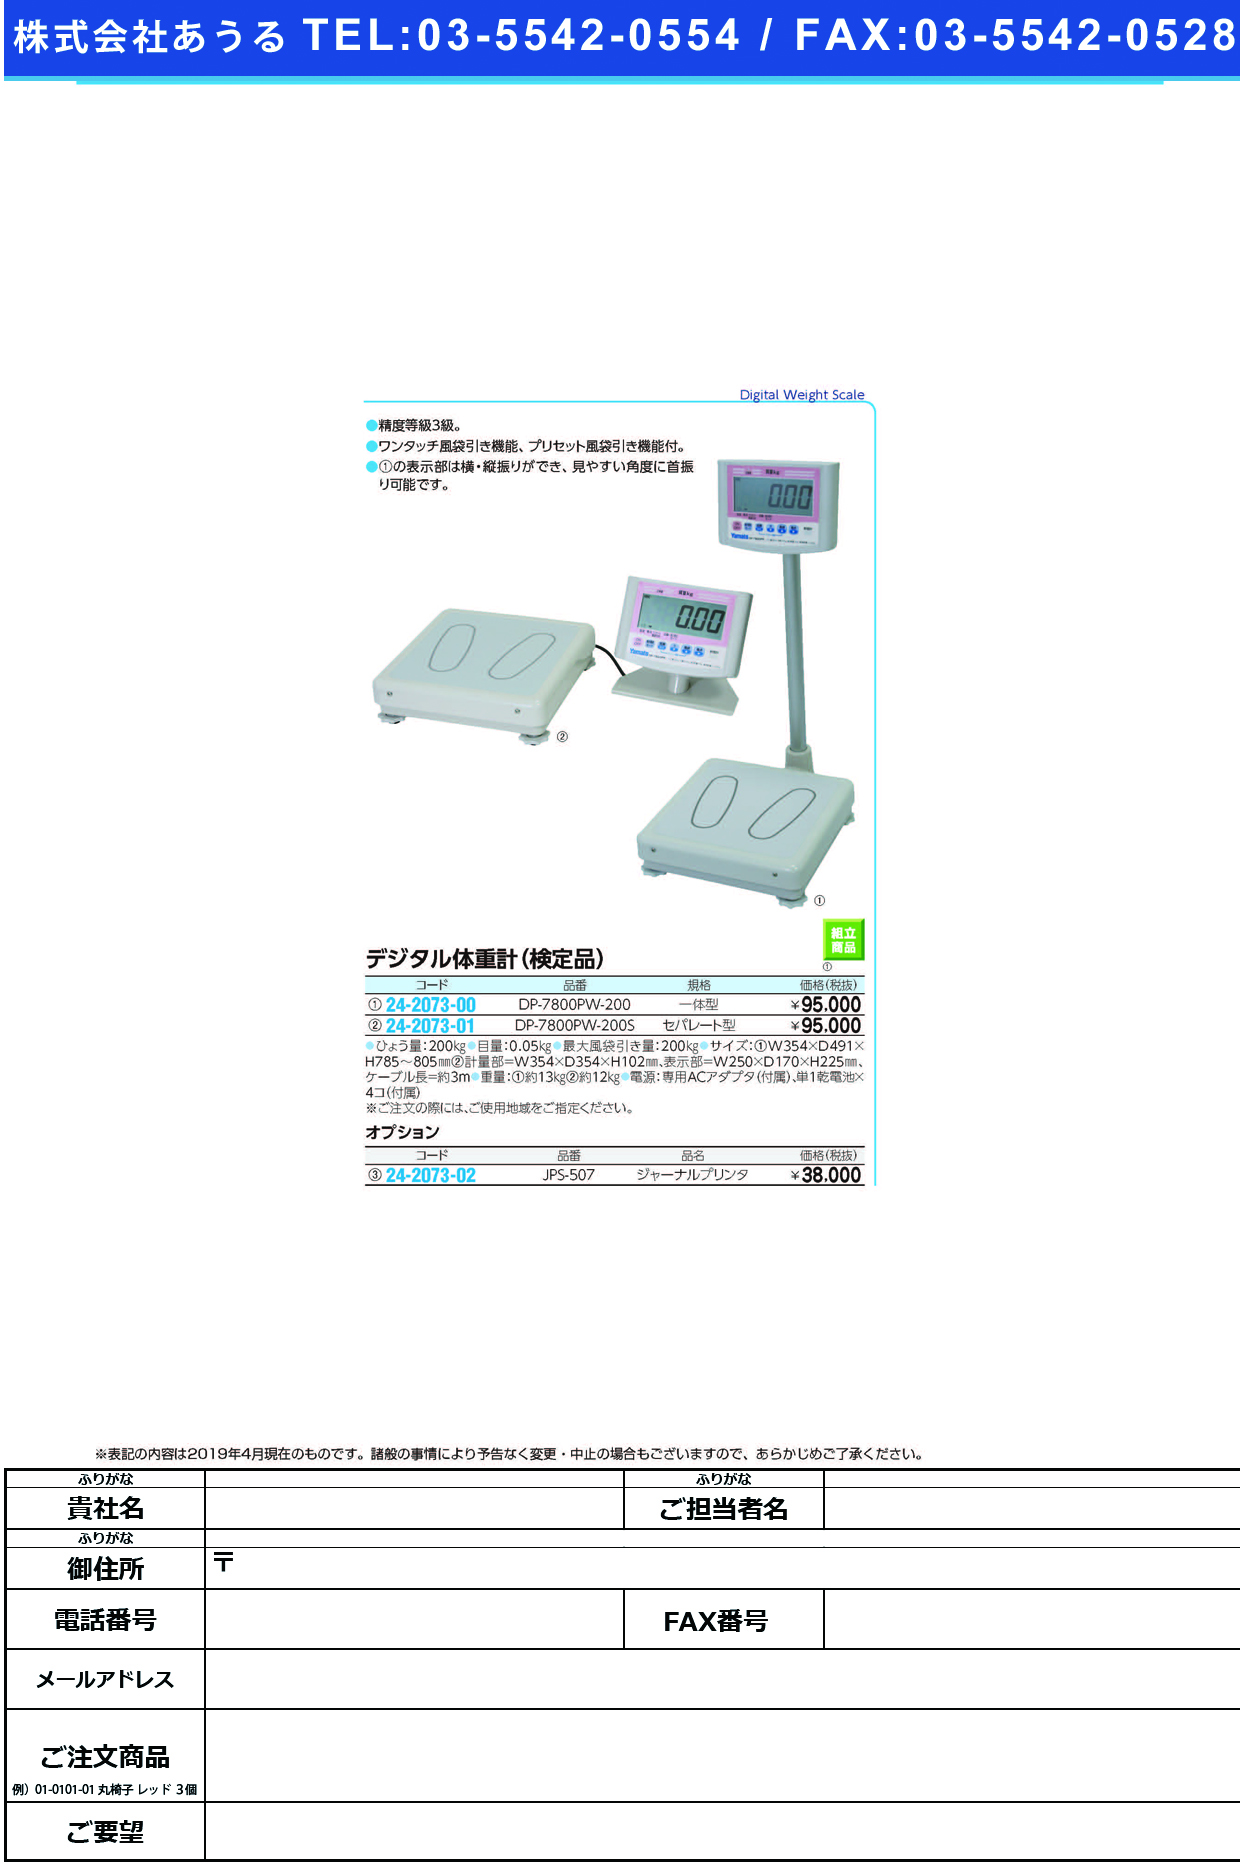 (24-2073-01)ヤマトデジタル体重計（検定付） DP-7800PW-200Sｾﾊﾟﾚｰﾄ ﾔﾏﾄﾃﾞｼﾞﾀﾙﾀｲｼﾞｭｹｲ【1台単位】【2019年カタログ商品】